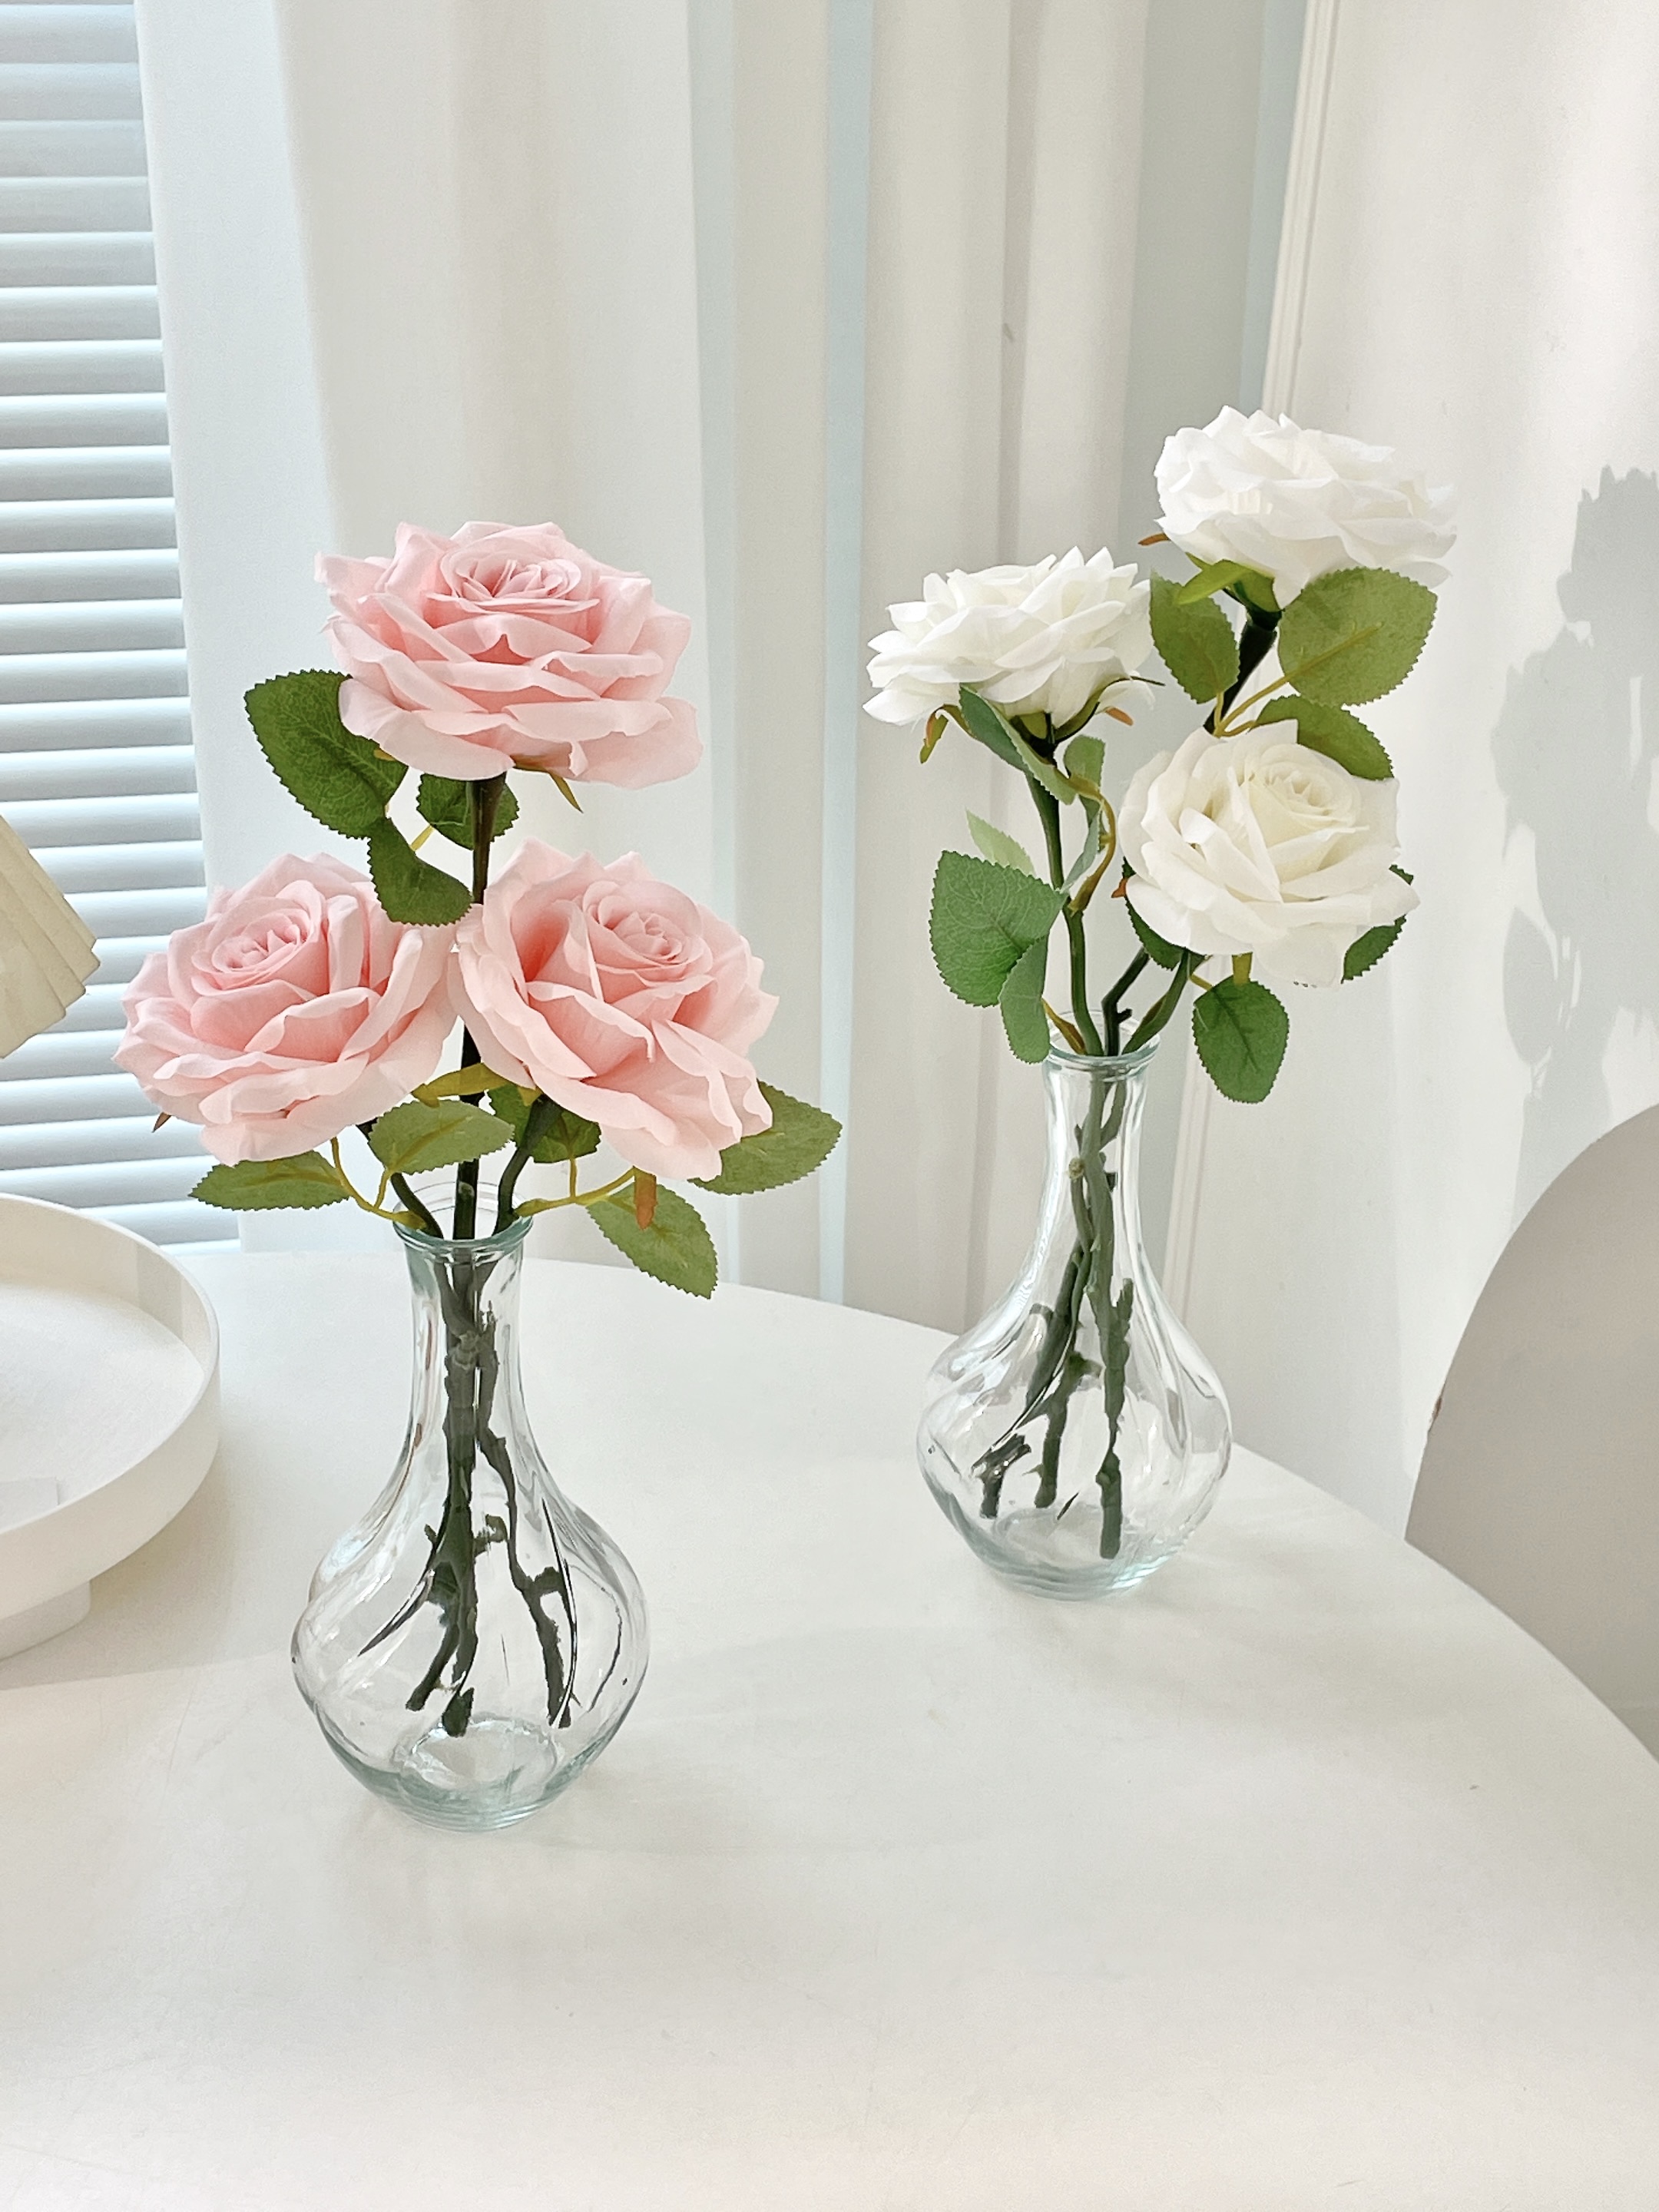 玫瑰仿真花假花玻璃花瓶花束插花裝飾品擺設客廳餐桌花藝佈置擺件